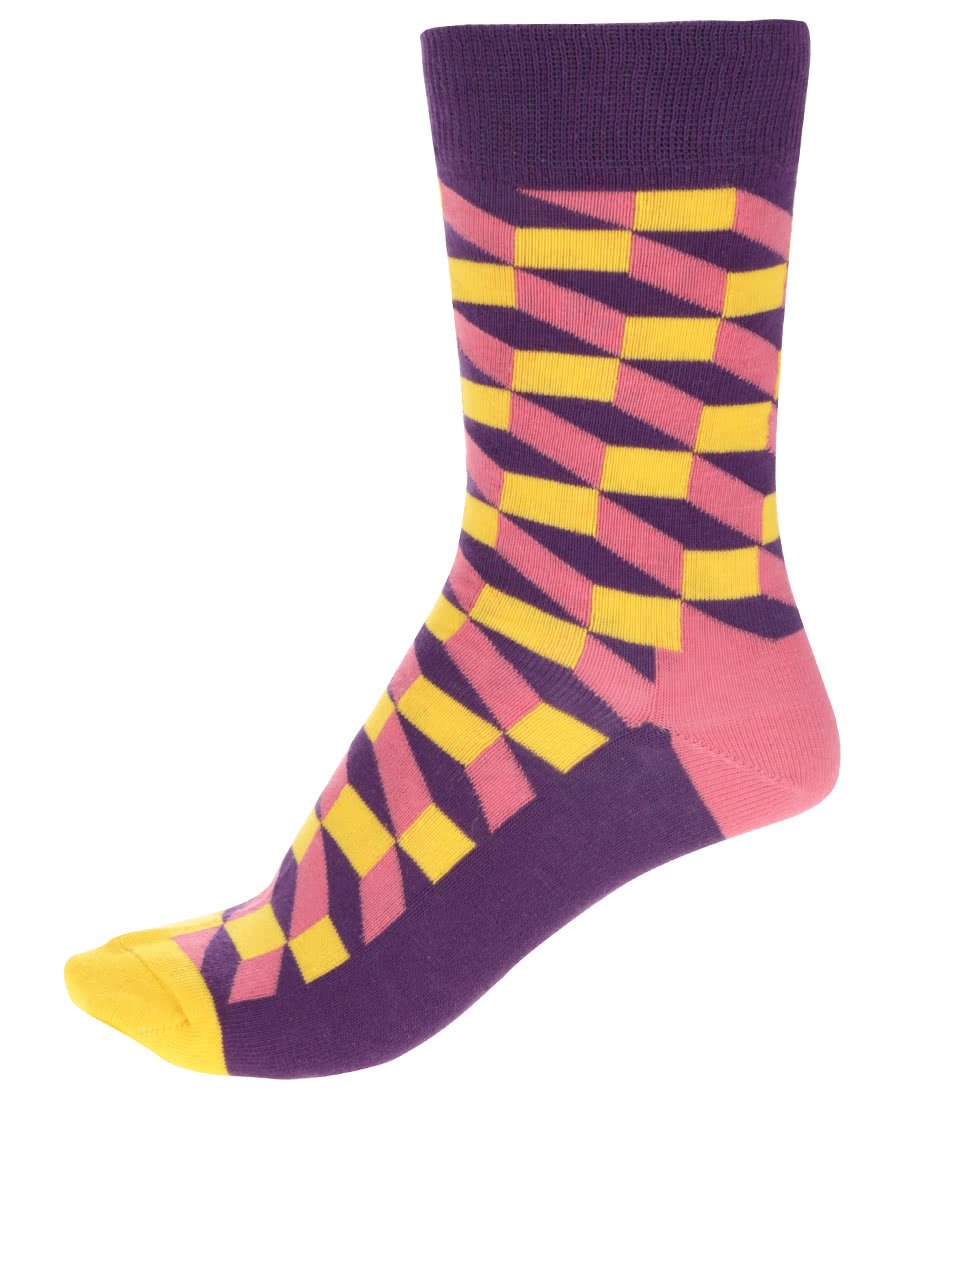 Fialovo-žluté dámské ponožky Happy Socks Filled Optic